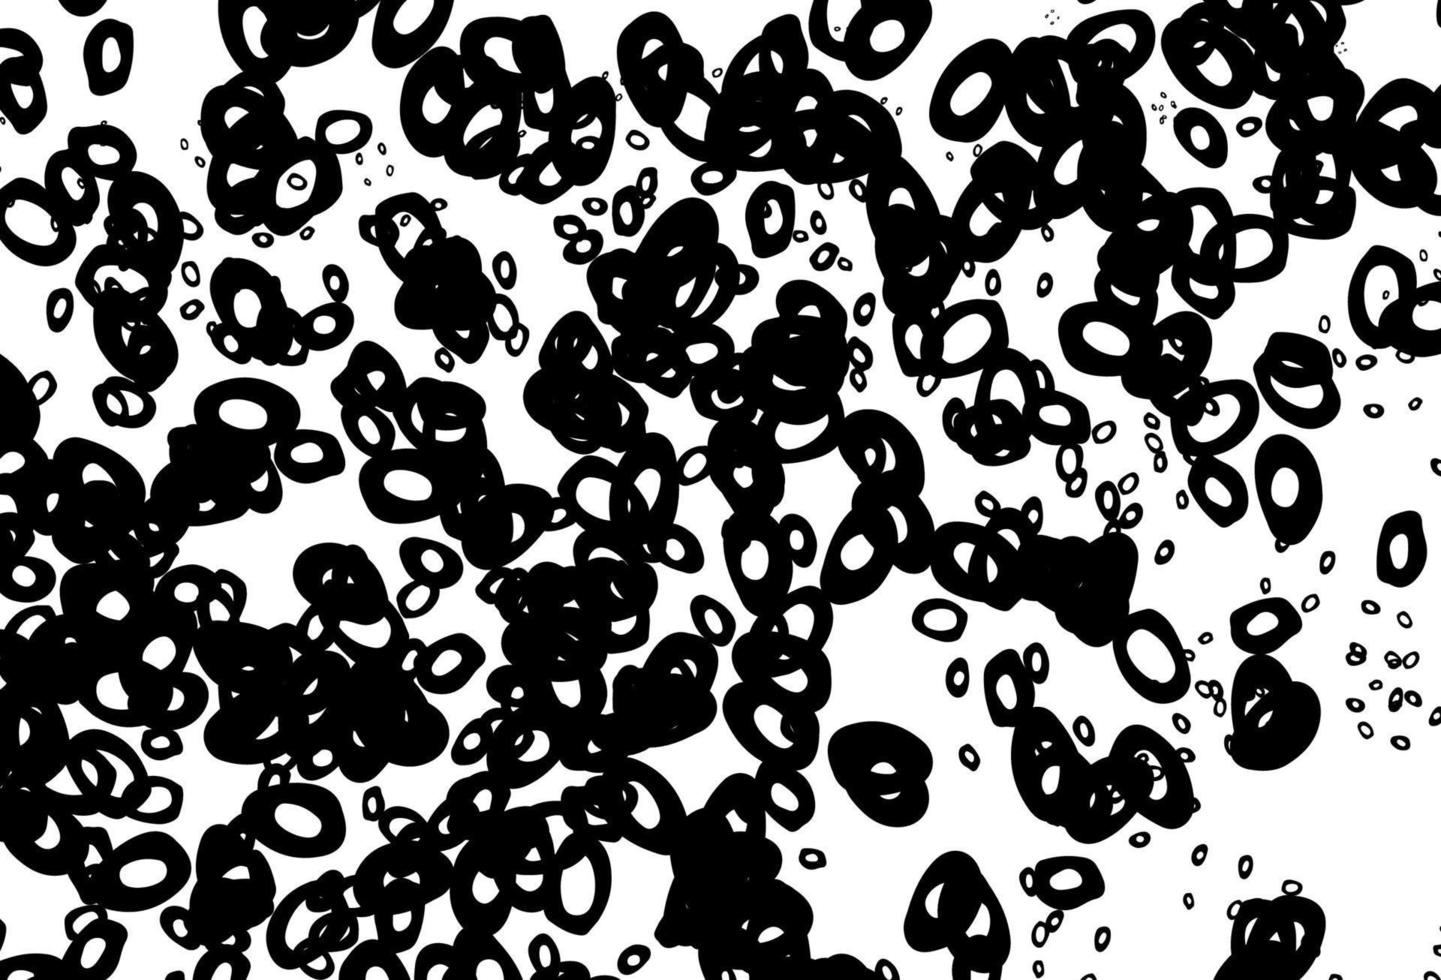 modelo de vetor preto e branco com círculos.